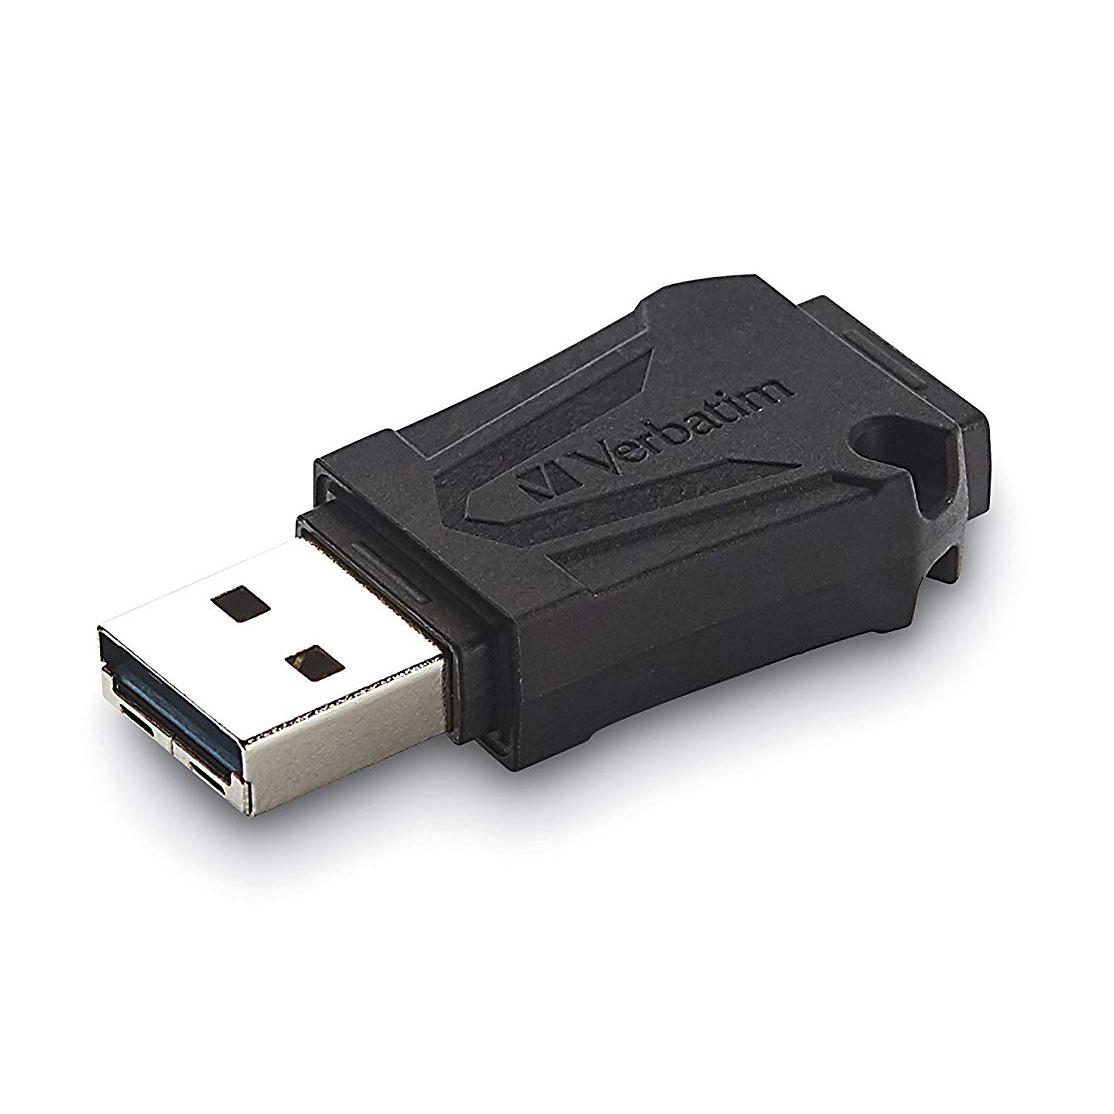 Memoria USB ToughMAX 32GB